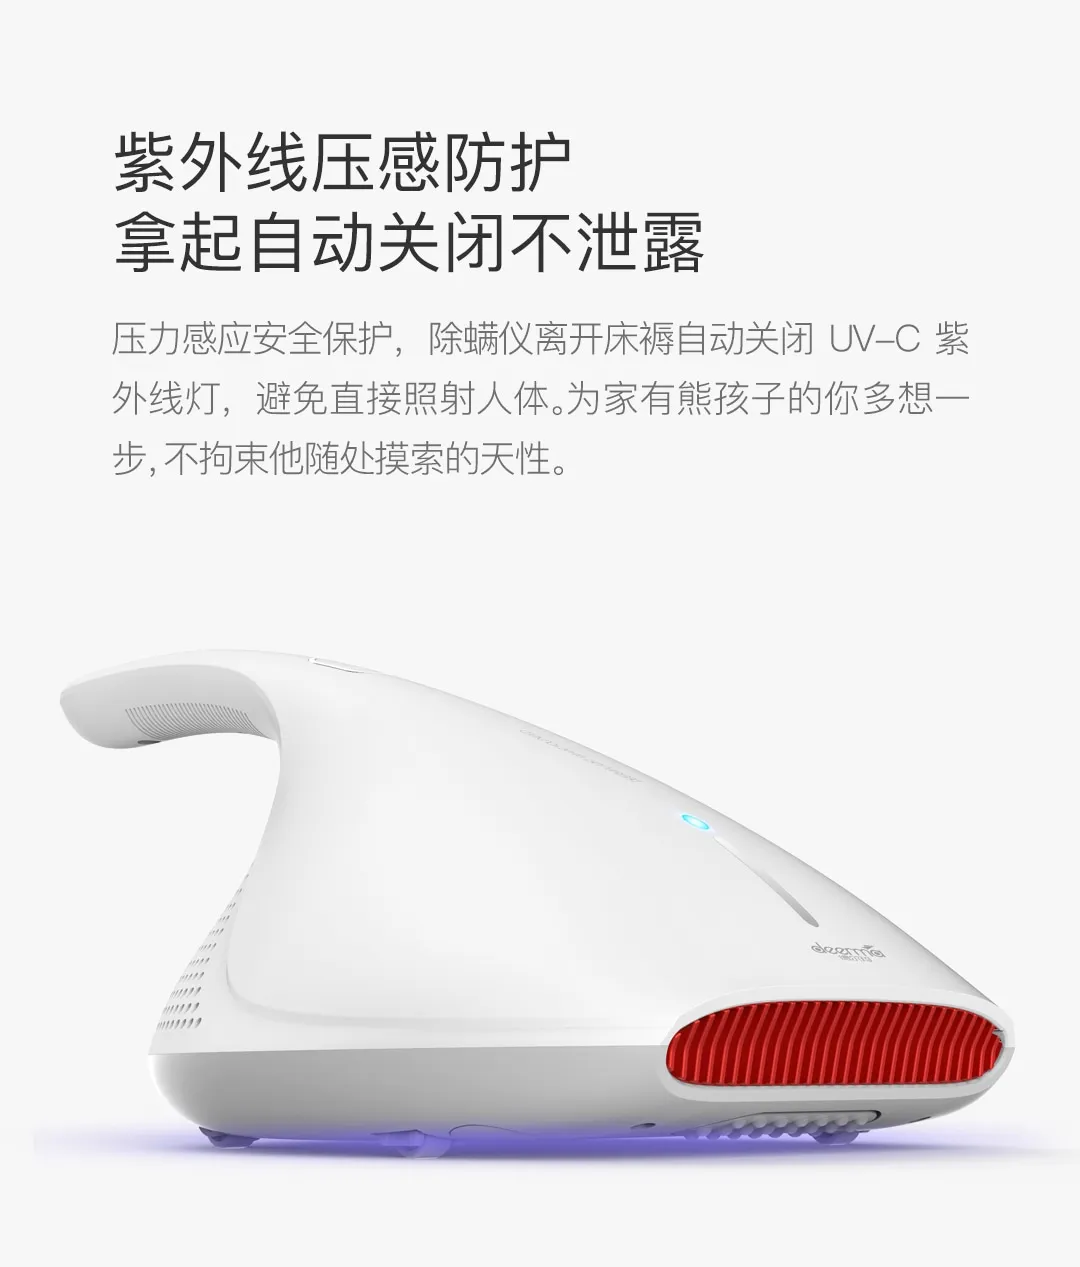 Xiaomi Mijia Deerma CM810 ручной пылесос пылеуловитель дом контроллер УФ свет 13000 Pa сильный всасывающий 220 V умный дом